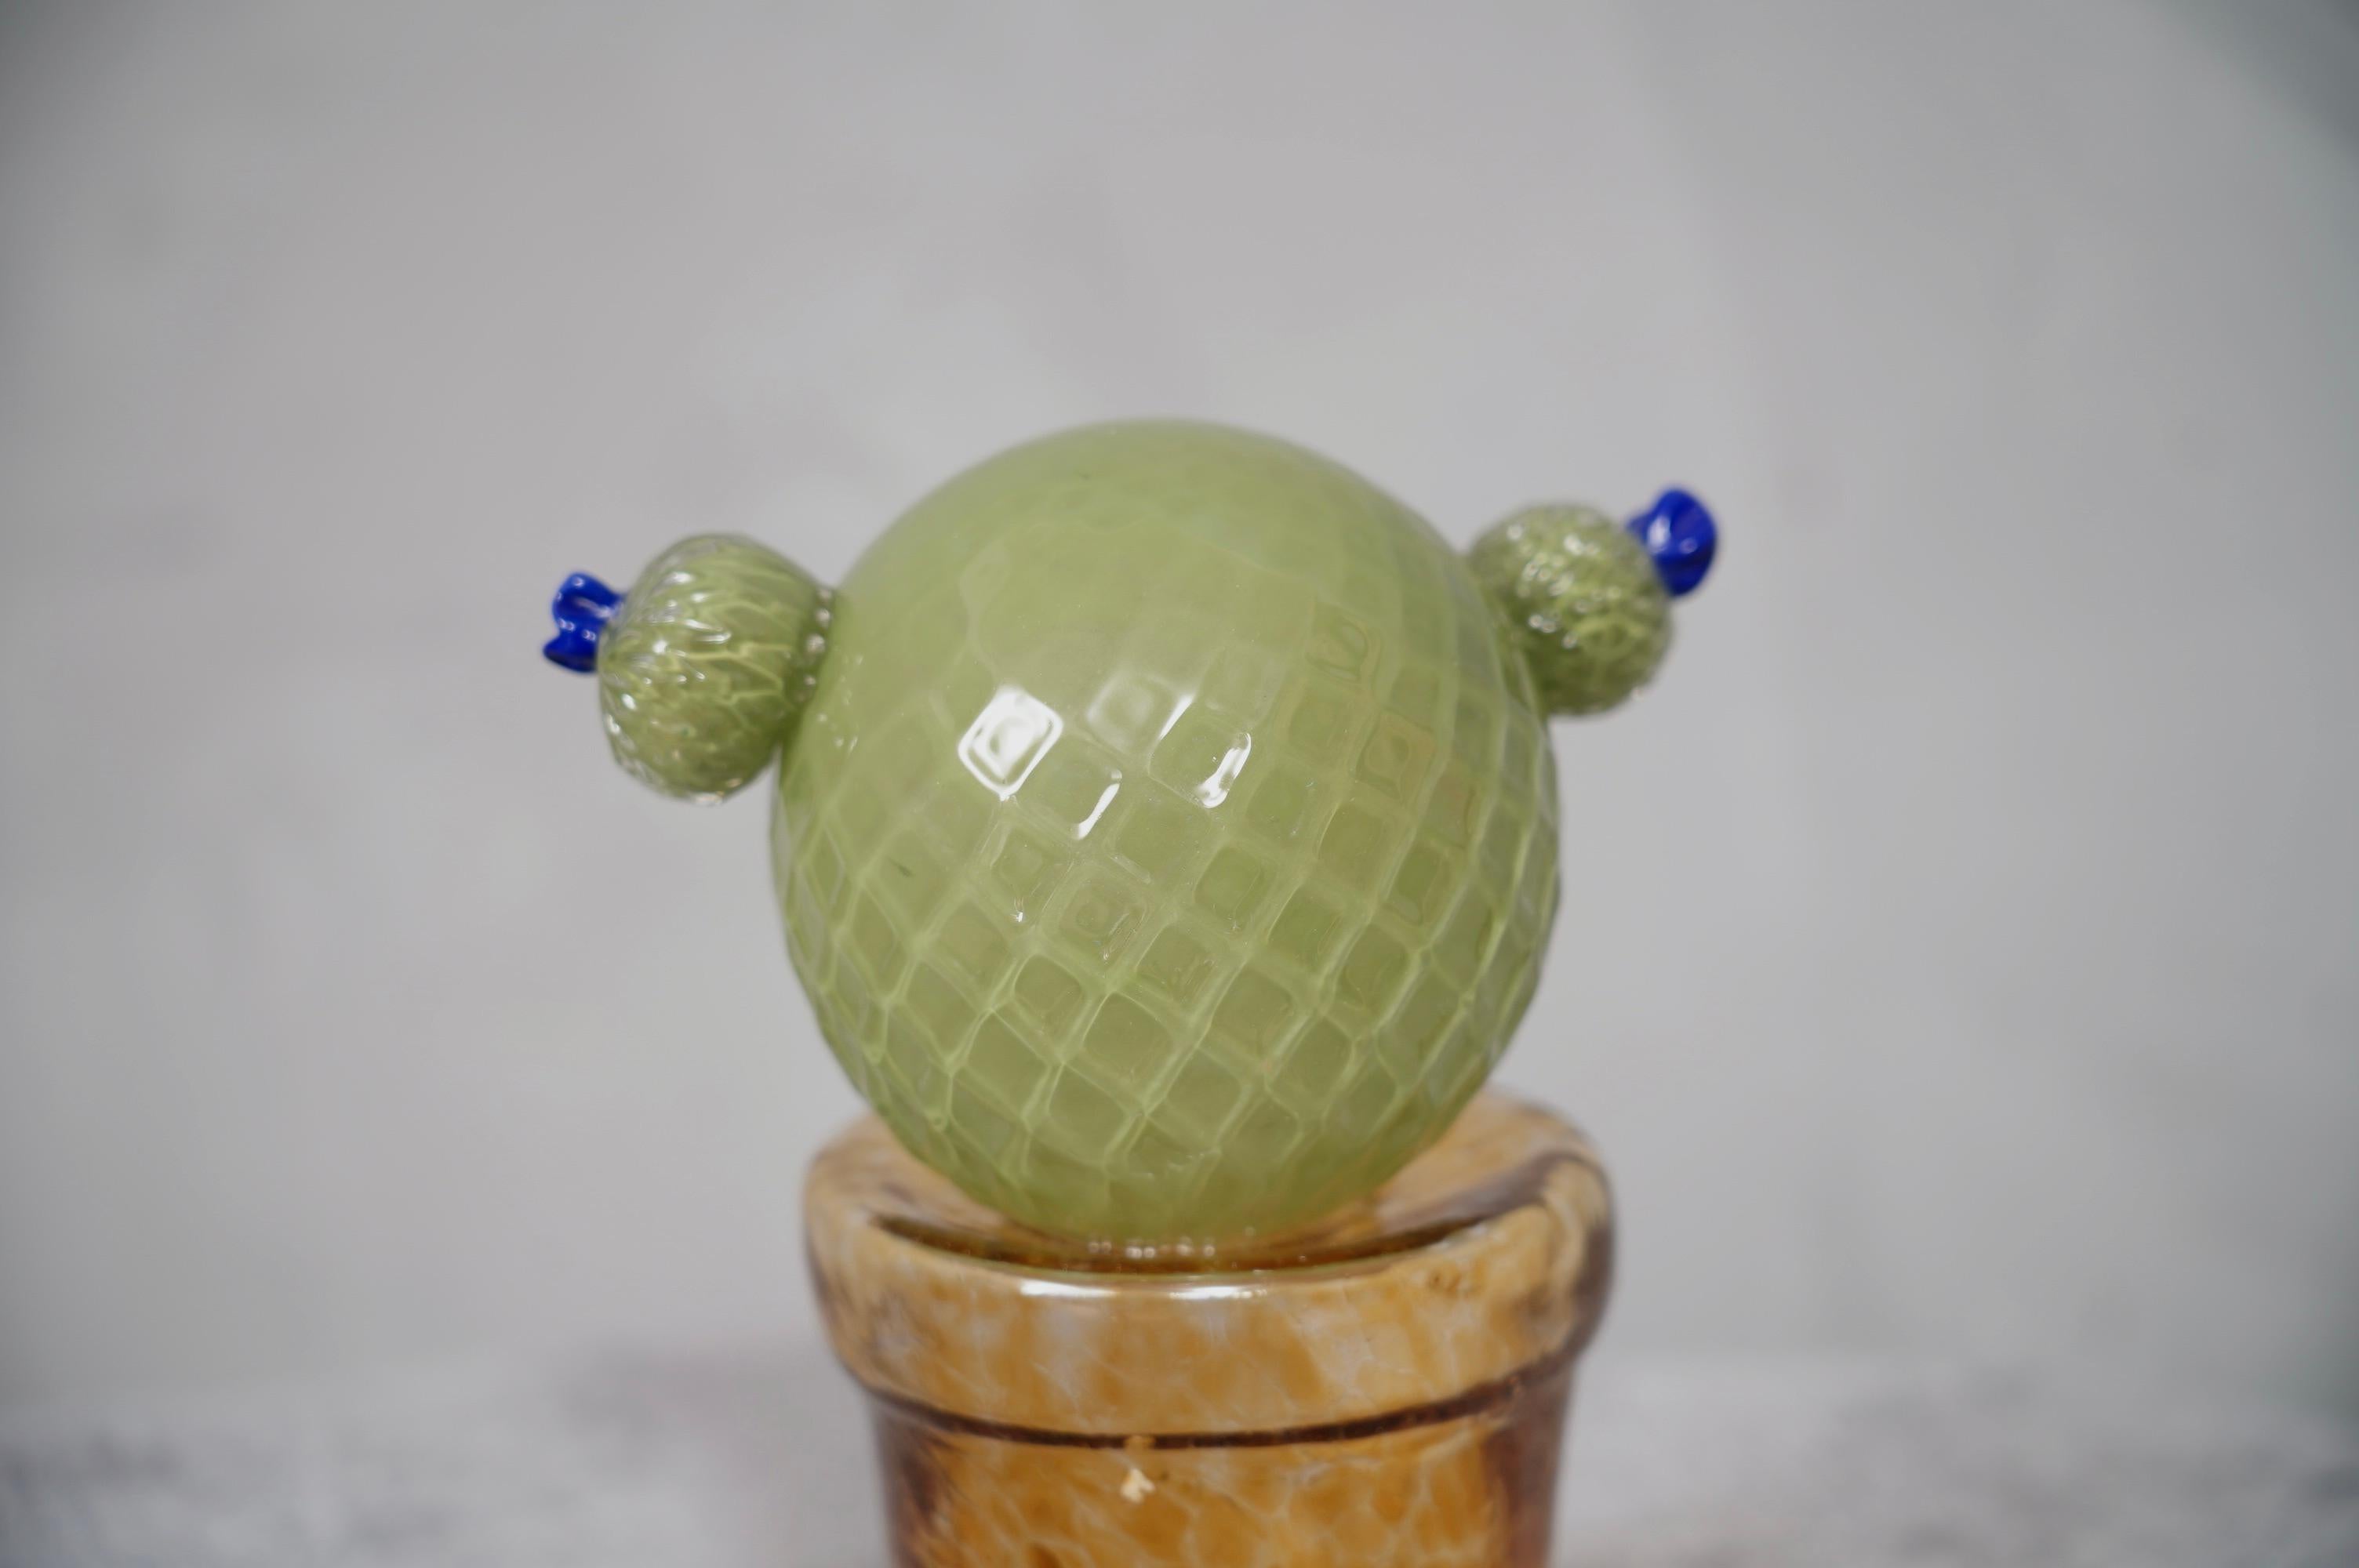 Design italien, ce cactus est une icône de la mode italienne. Il est vert avec un magnifique vase en verre ambré en dessous.

En édition limitée, fabriqués dans l'un des fours de Venise, les cactus sont en verre de Murano ont un vase en verre ambré